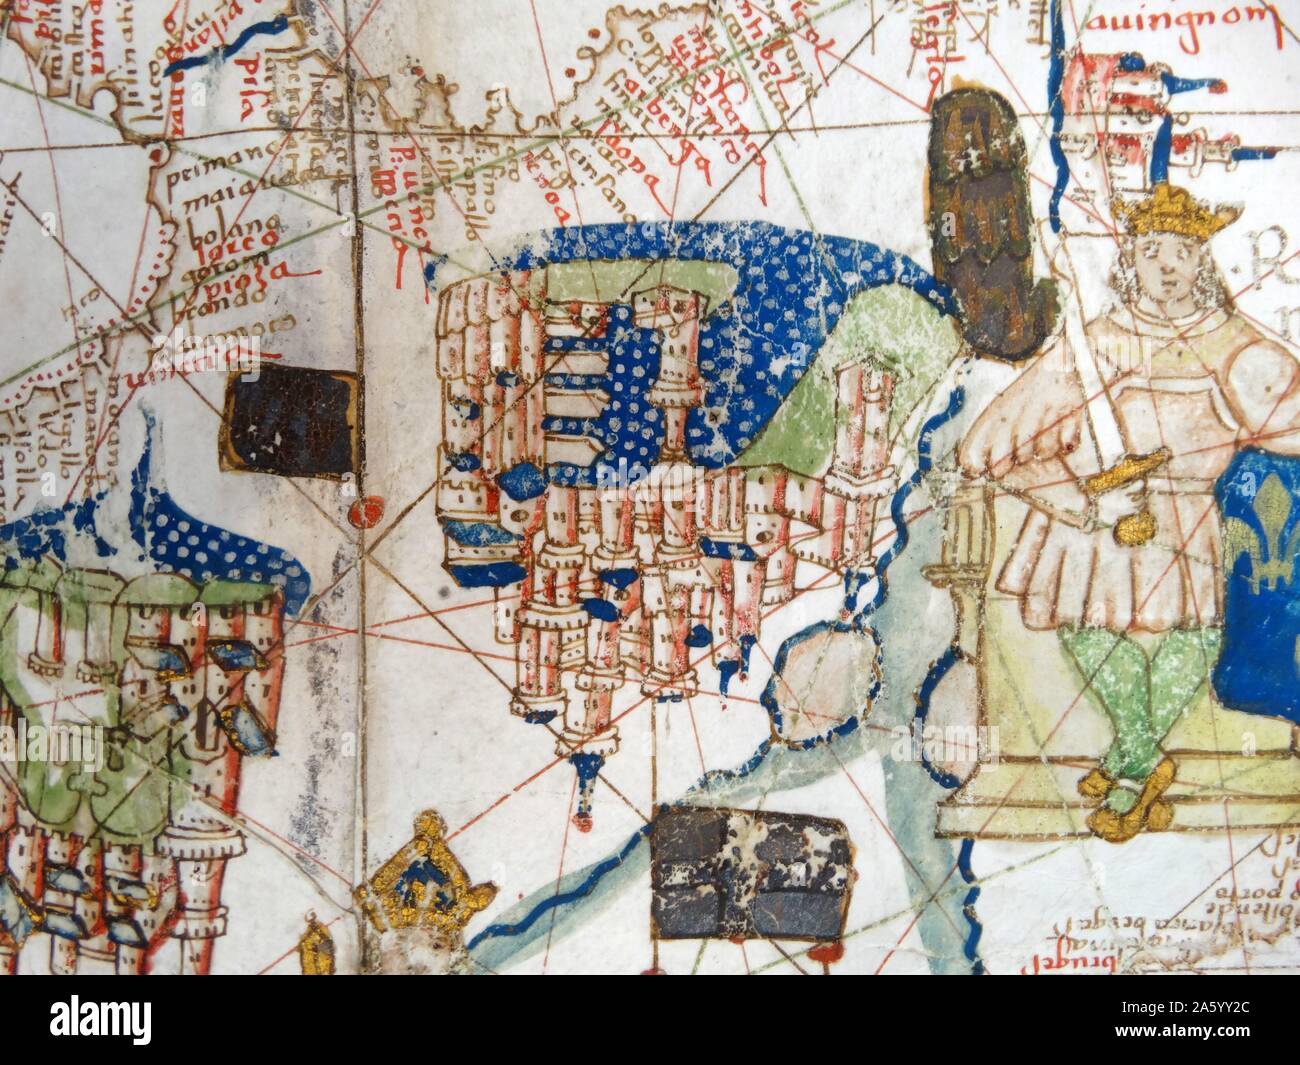 Renaissance Mappa di Europa, Jacopo Russo, 1528, dettaglio di Avignone e la Francia meridionale Foto Stock